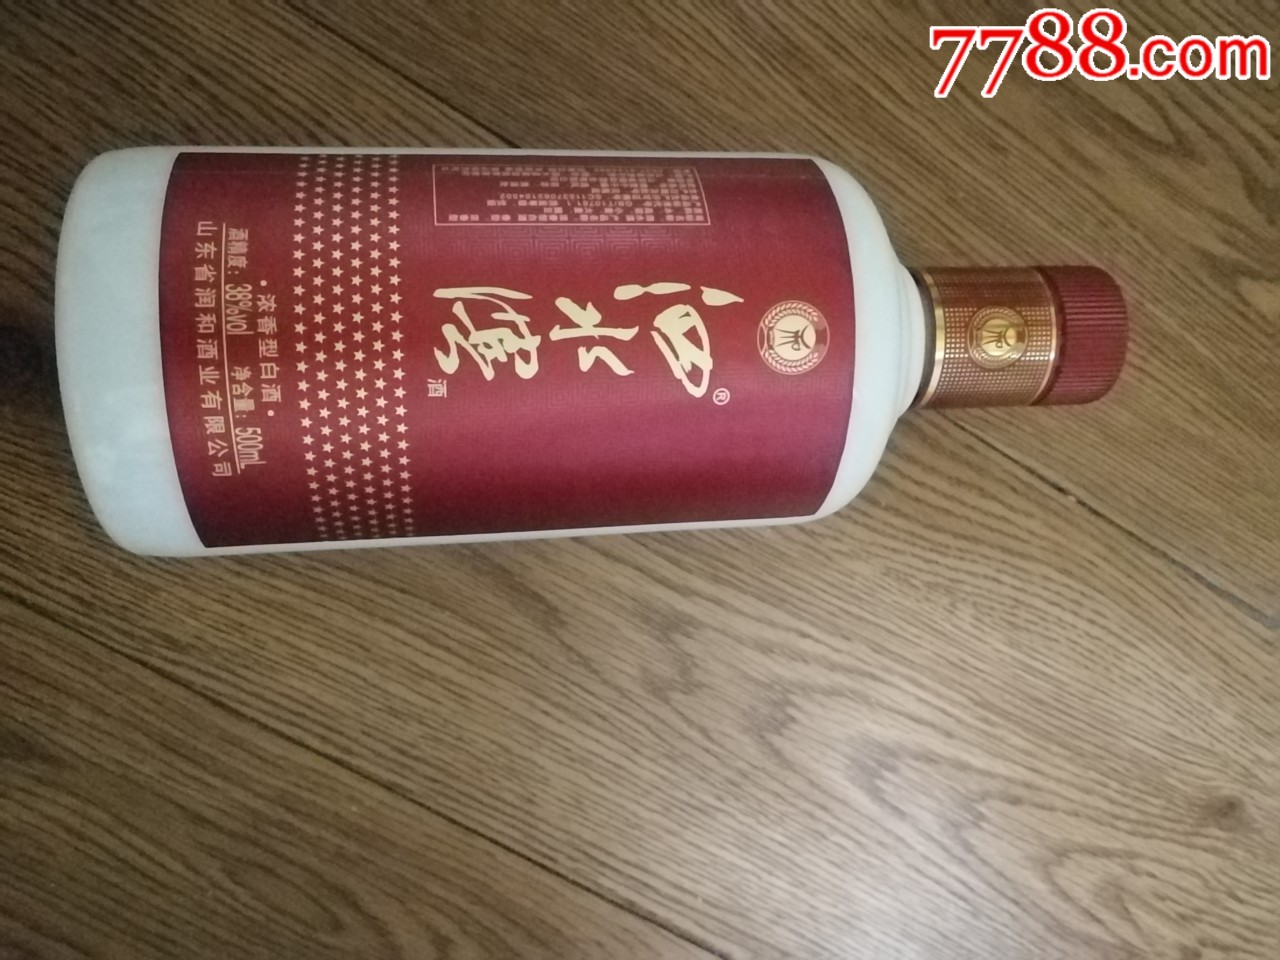 泗水滨酒瓶一个-价格:10元-au21752725-酒瓶-加价-7788收藏__收藏